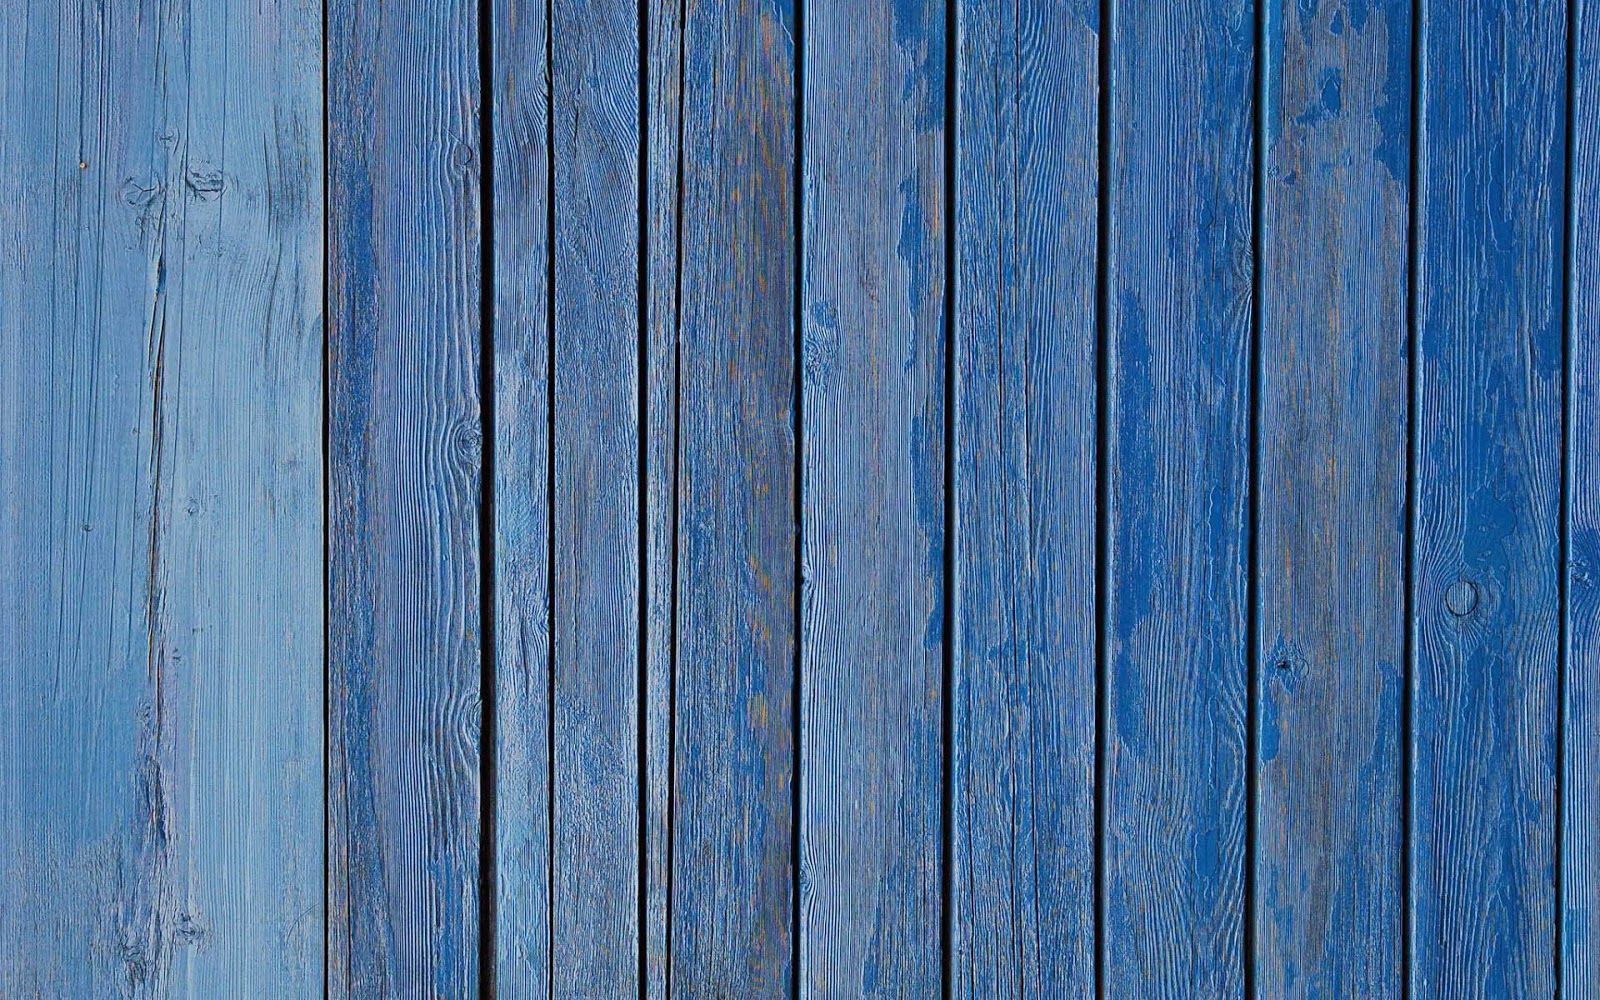  Holz Hintergrundbild 1600x1000. Blauen Zaun Aus Holzplanken Hd Holz Hintergrundbilder Gemünden